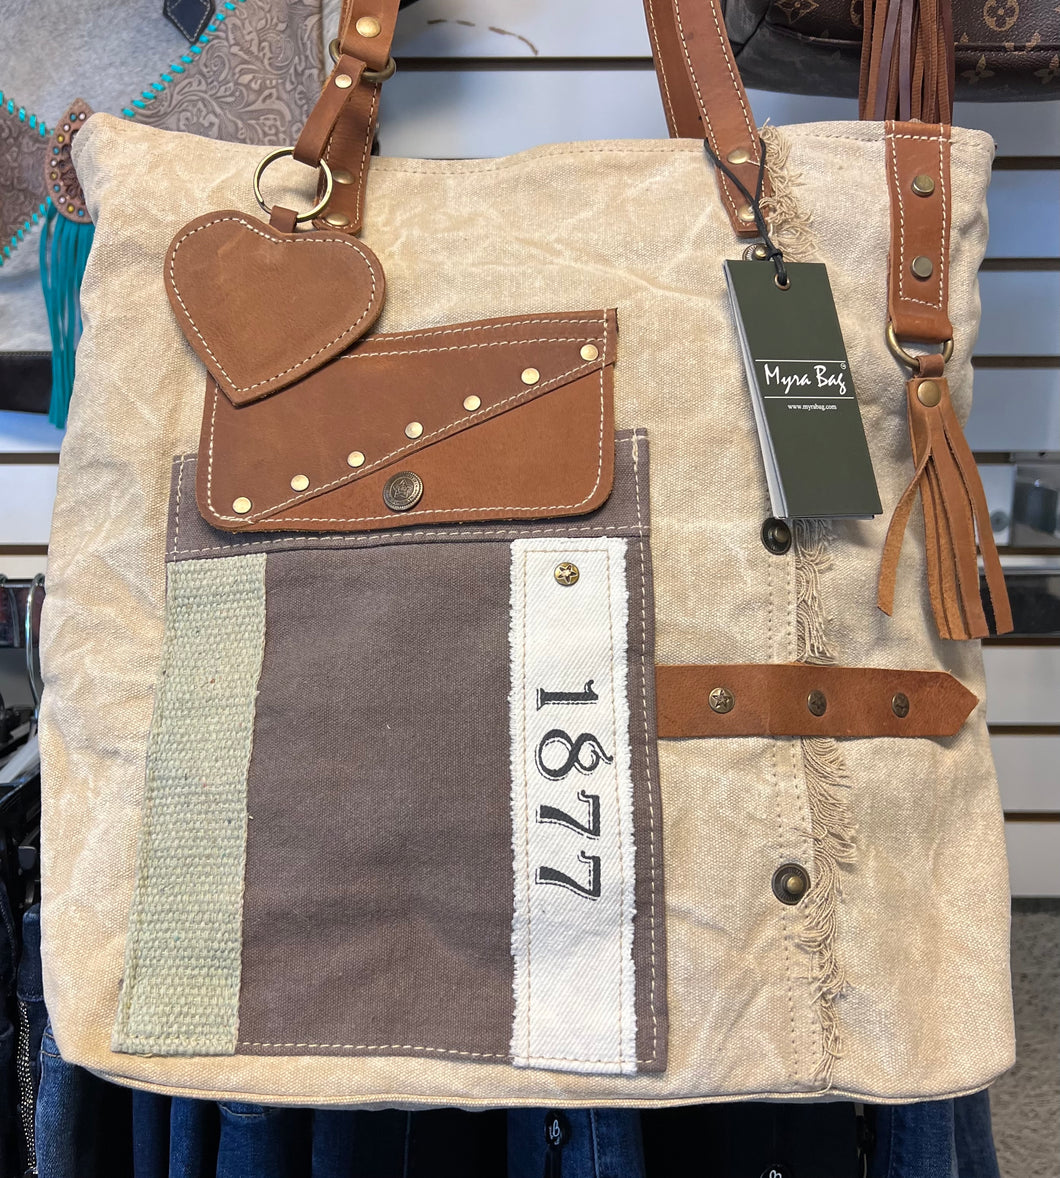 Myra Bag yesterday vintage tote bag canvas Leather shoulder bag